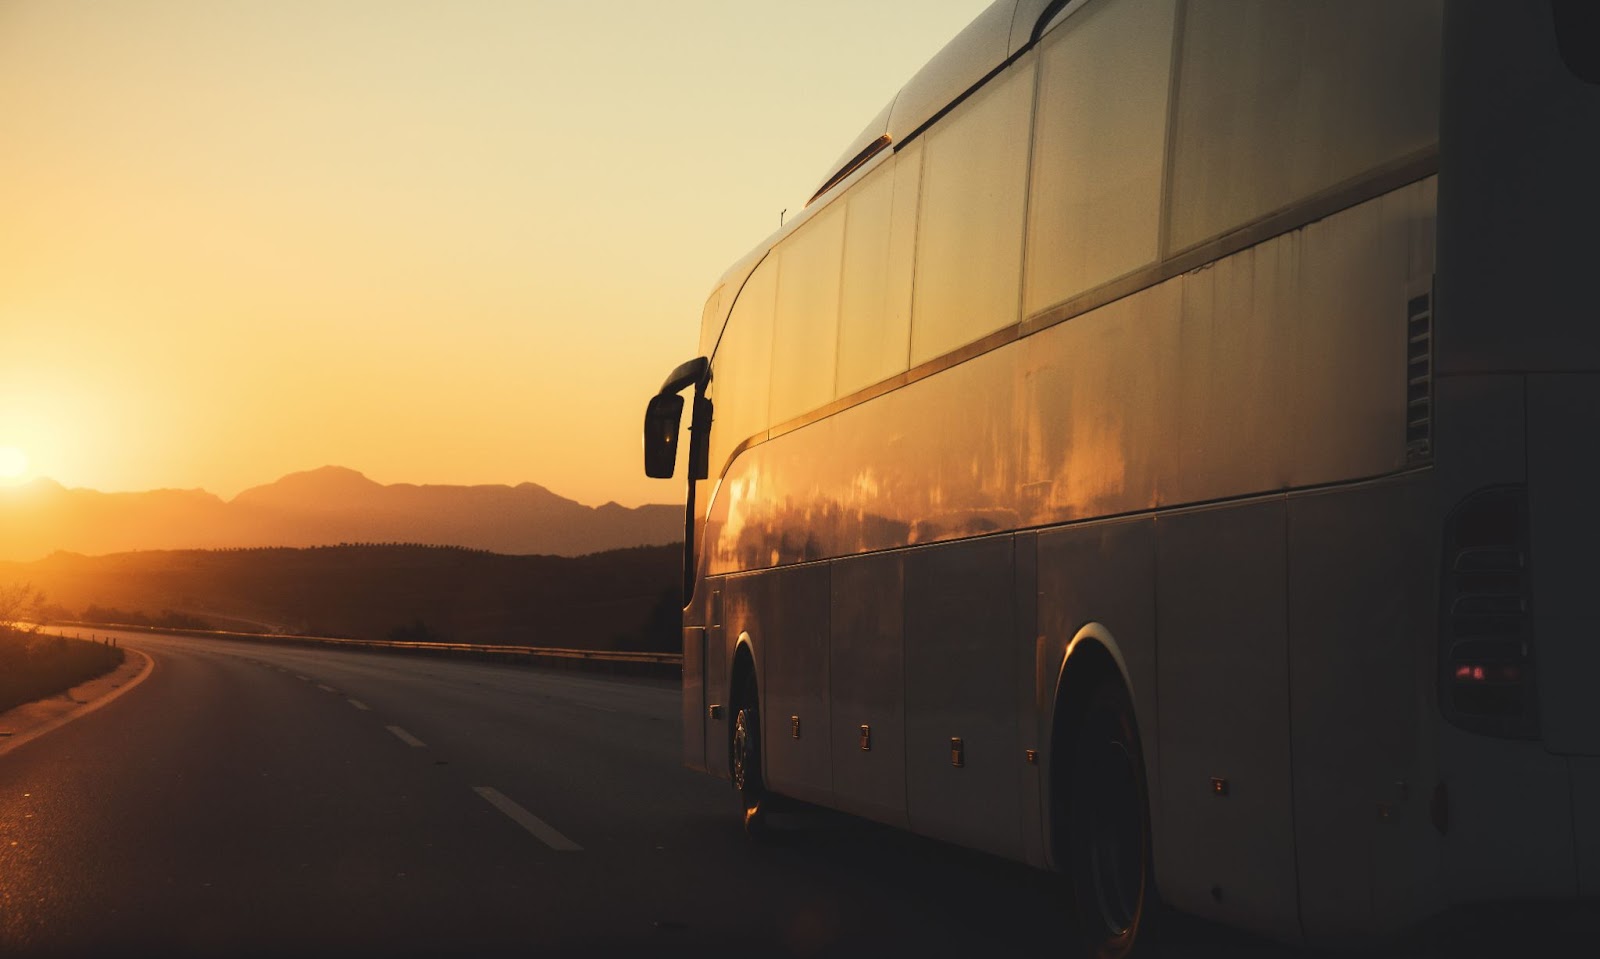 Ônibus em estrada vazia, com pôr do sol no horizonte, iluminando o ônibus em tom amarelado